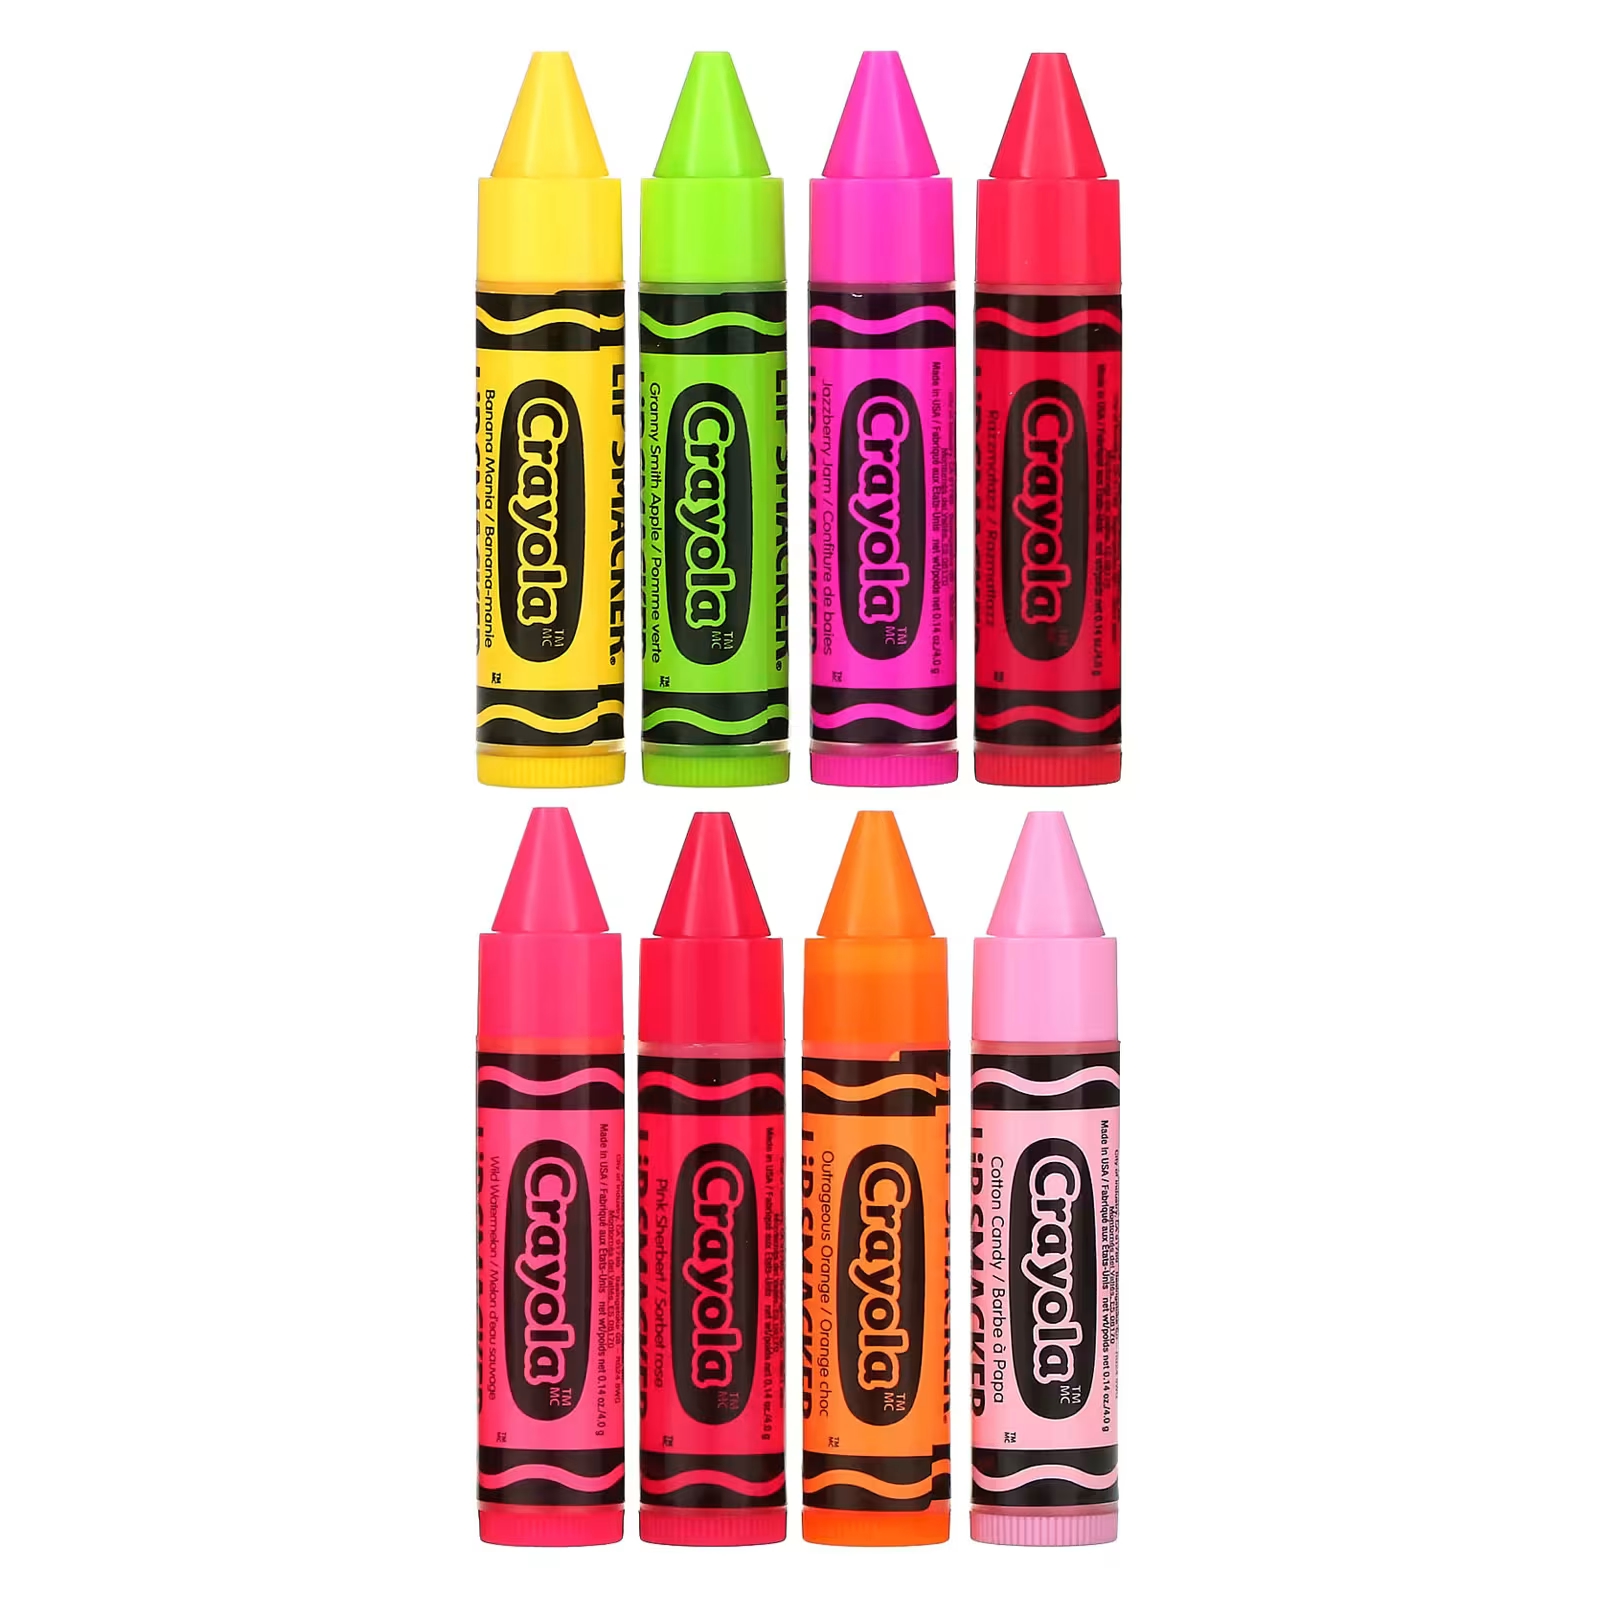 Lip Smacker Crayola Бальзам для губ «Вечеринка», 8 штук по 0,14 унции (4 г) каждая